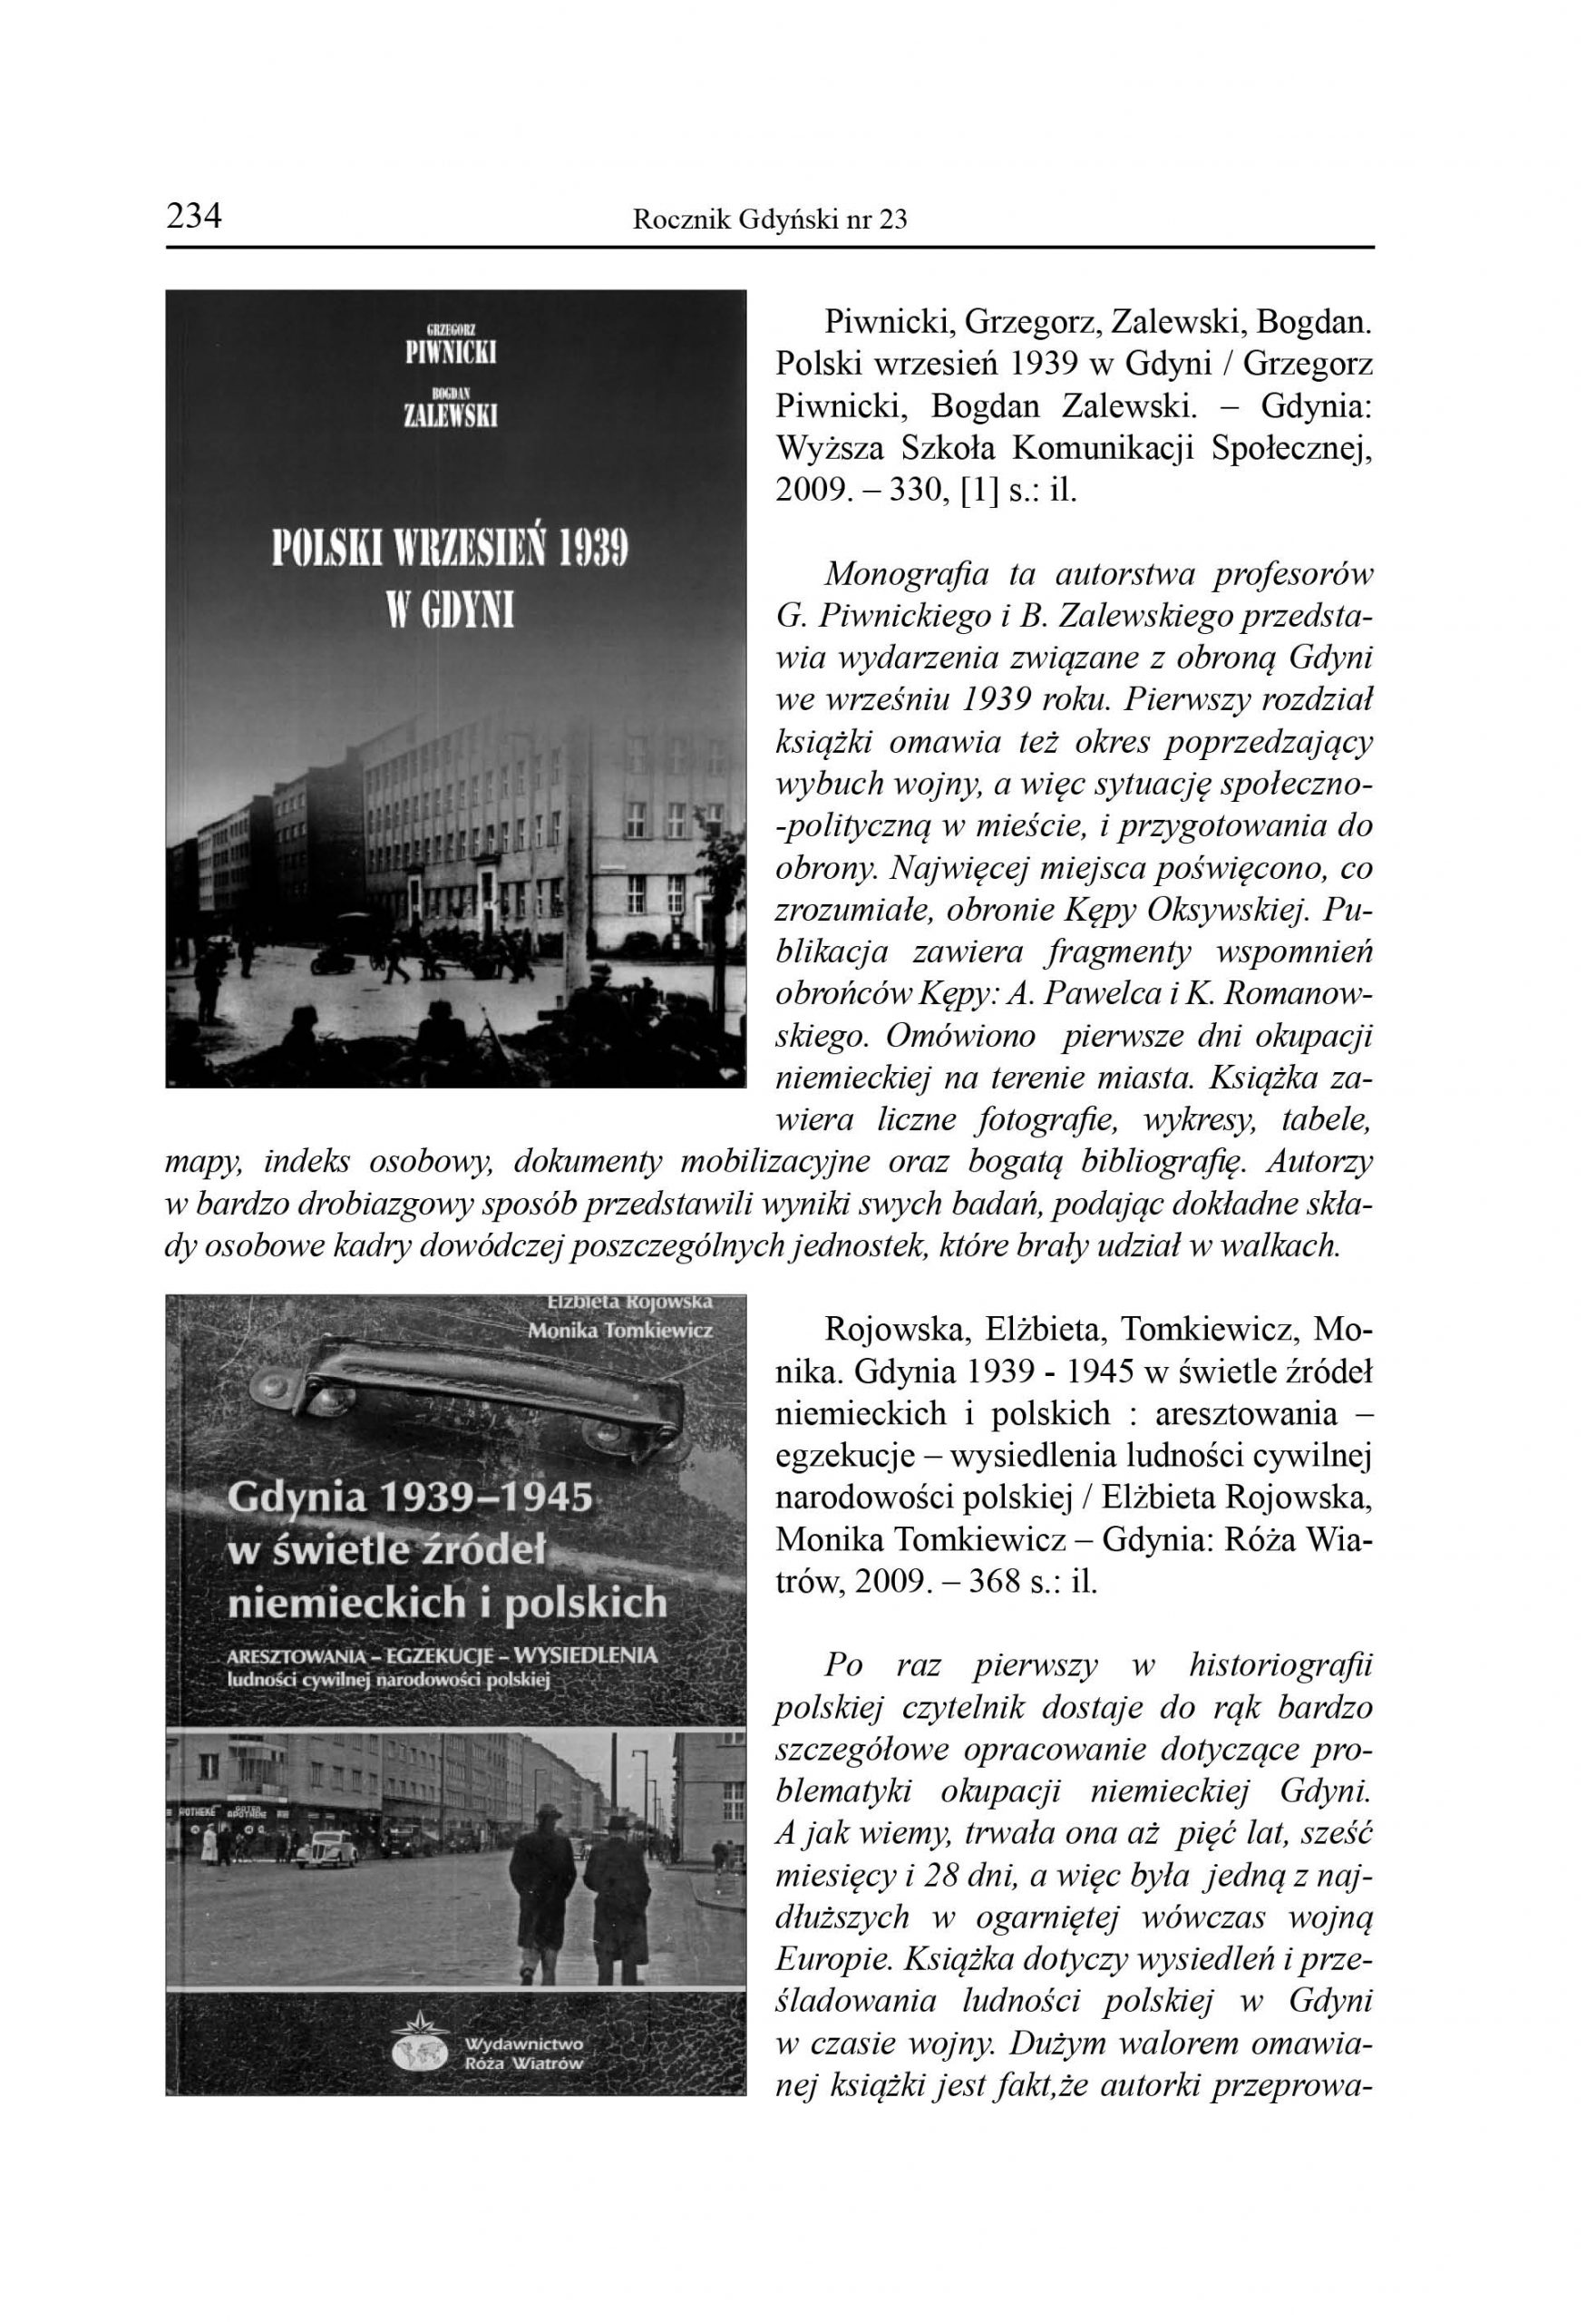 Gdyniana w zbiorach Miejskiej Biblioteki Publicznej w Gdyni. Wybór publikacji z lat 2009-2011